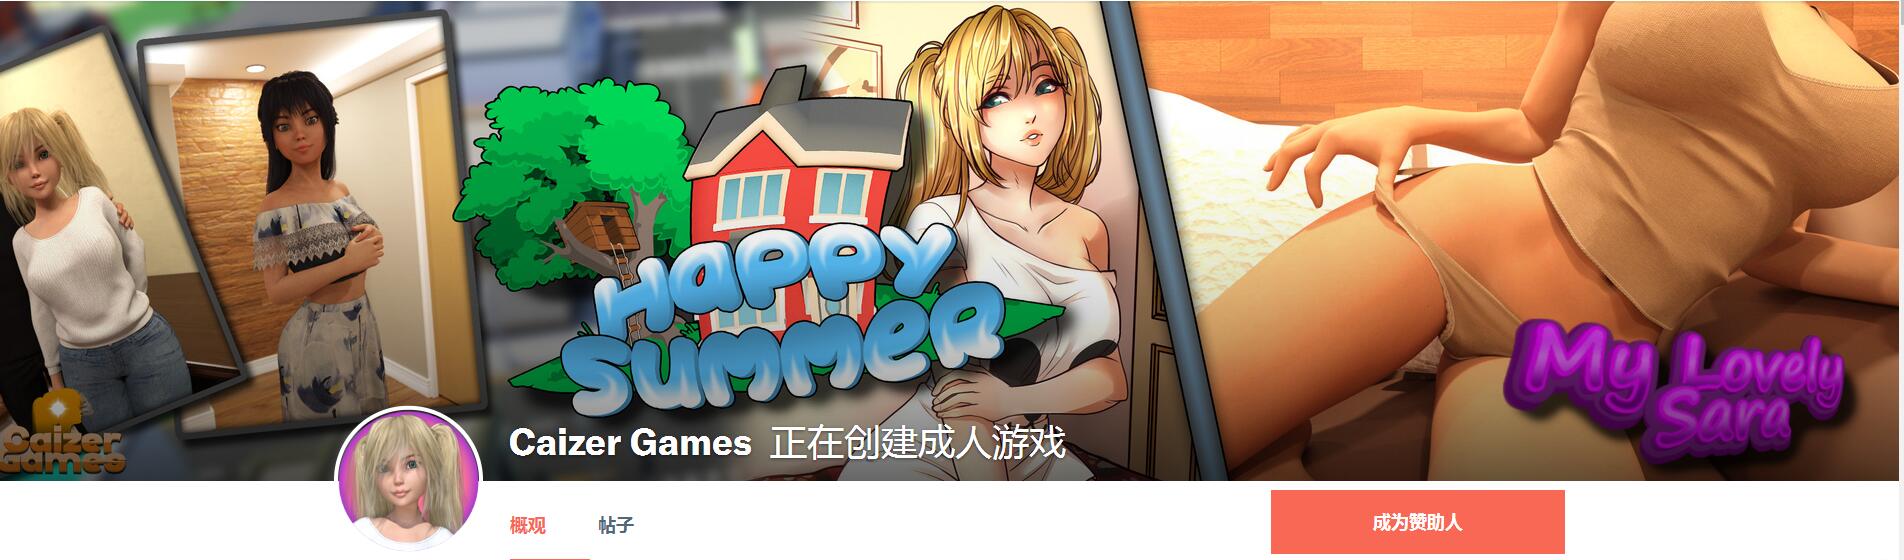 快乐的暑假 Happy Summer-V0.19 汉化版[PC+安卓]  5815 次元小屋